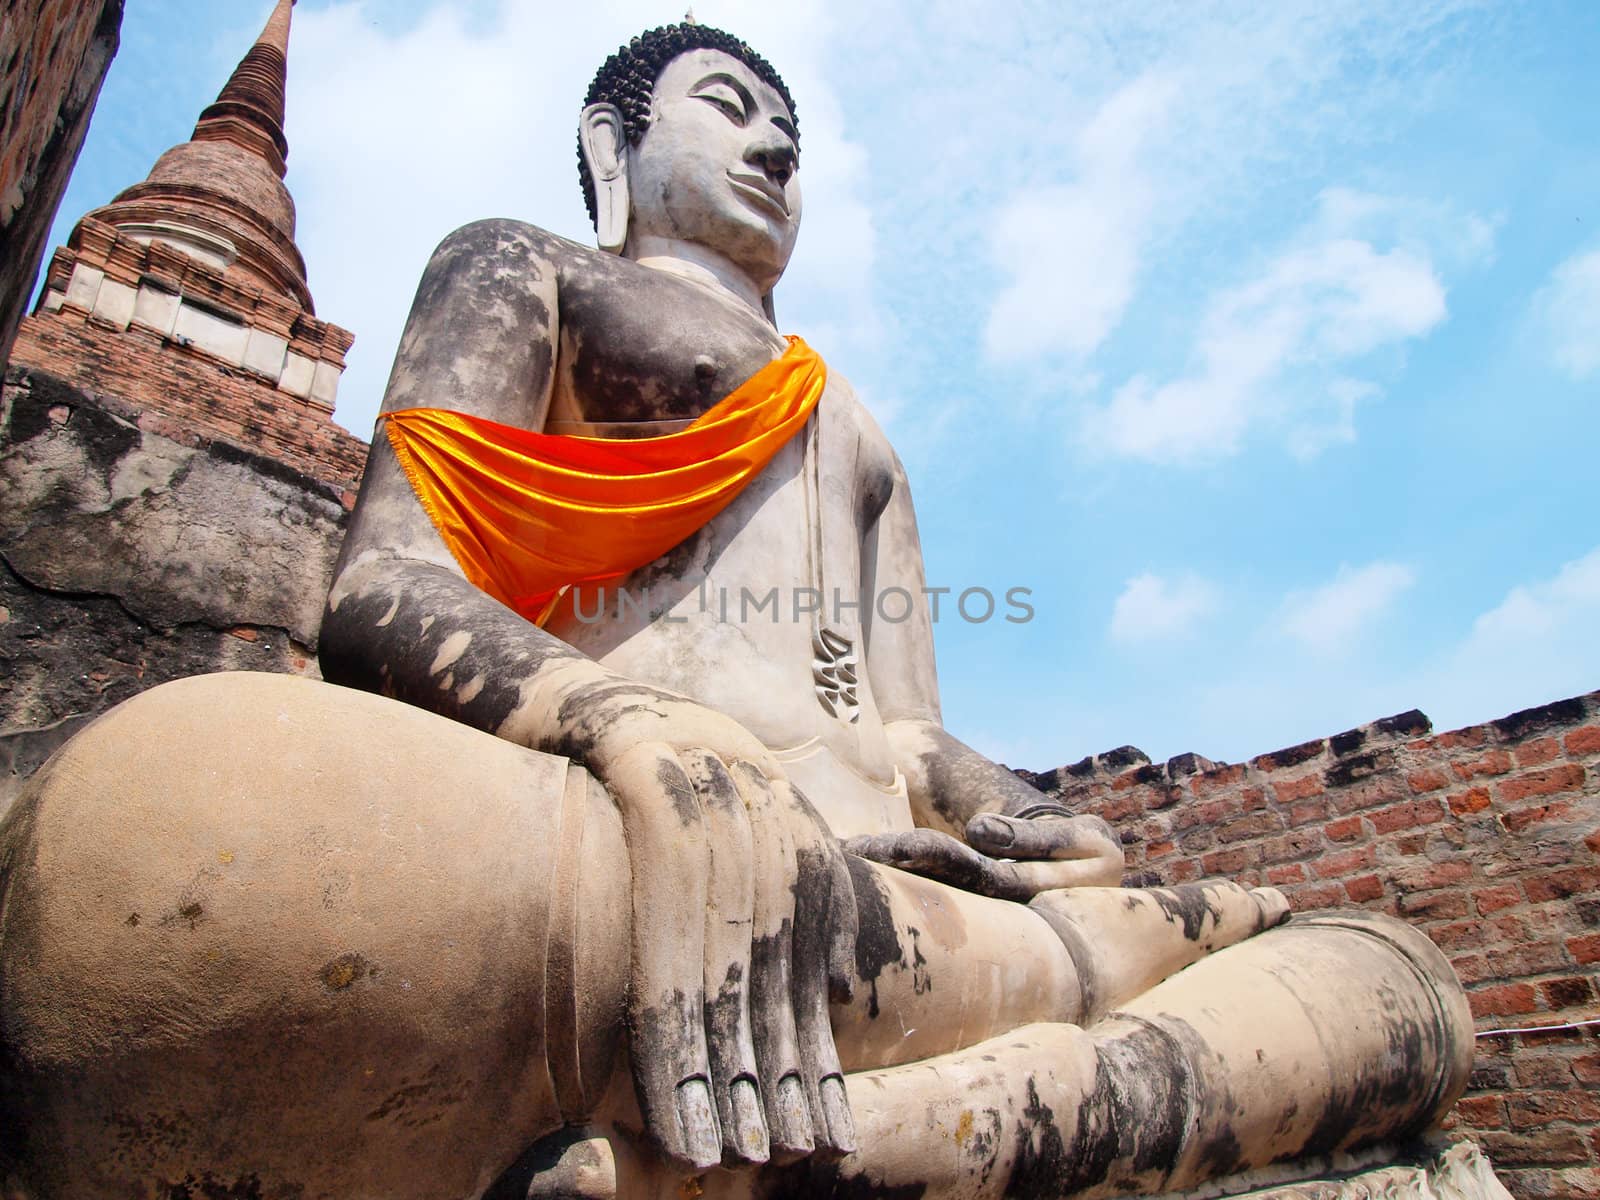 Wat Yai Chai Mongkol- Ayuttaya of Thailand by jakgree